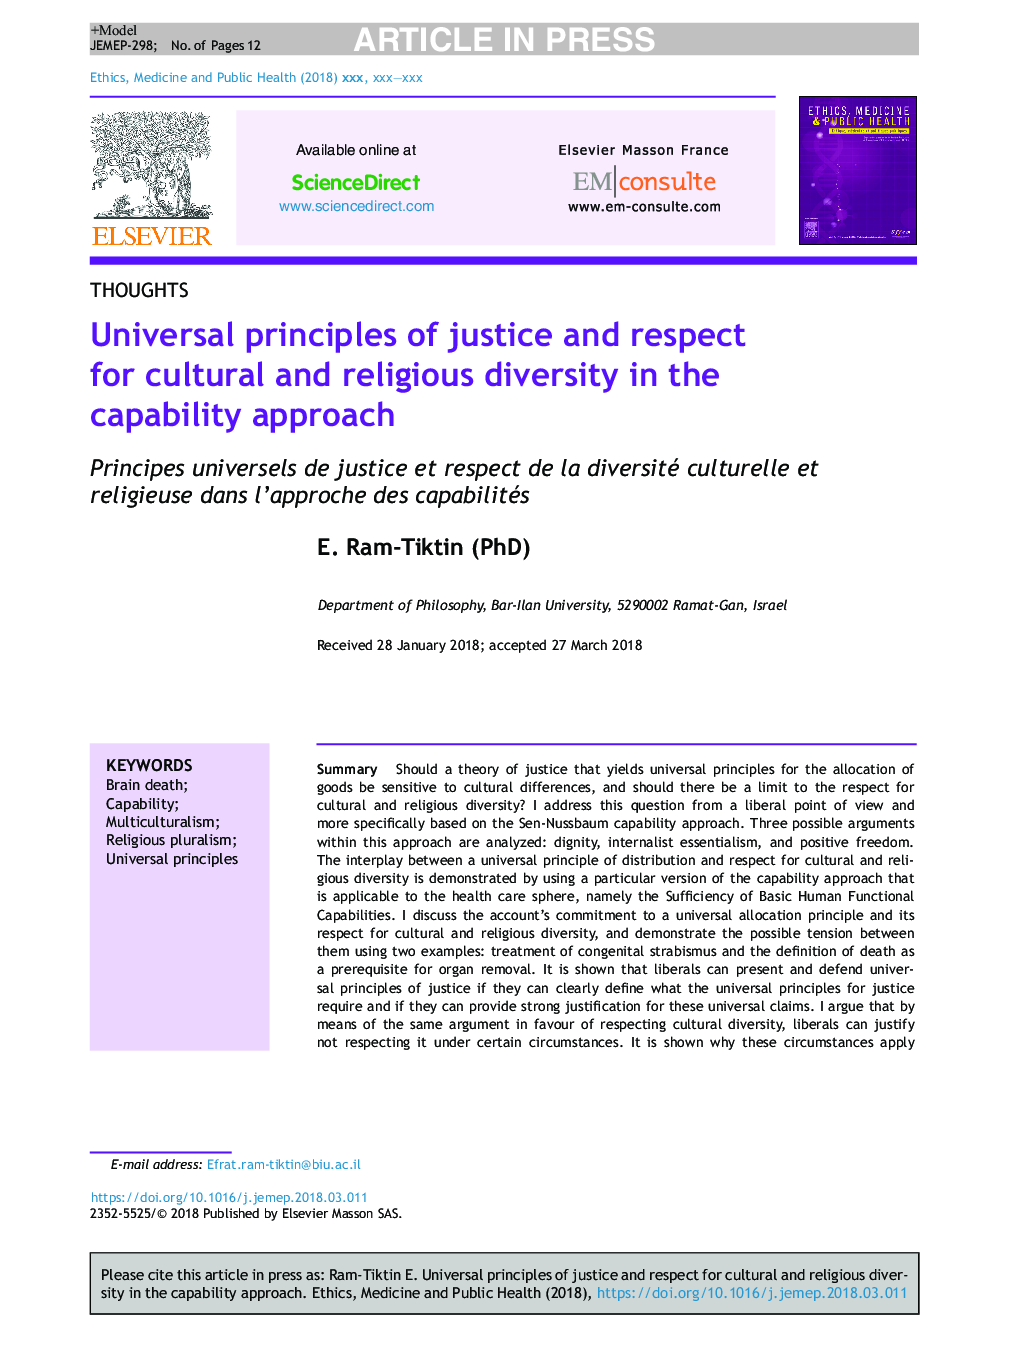 اصول کلی عدالت و احترام به تنوع فرهنگی و مذهبی در رویکرد قابلیت